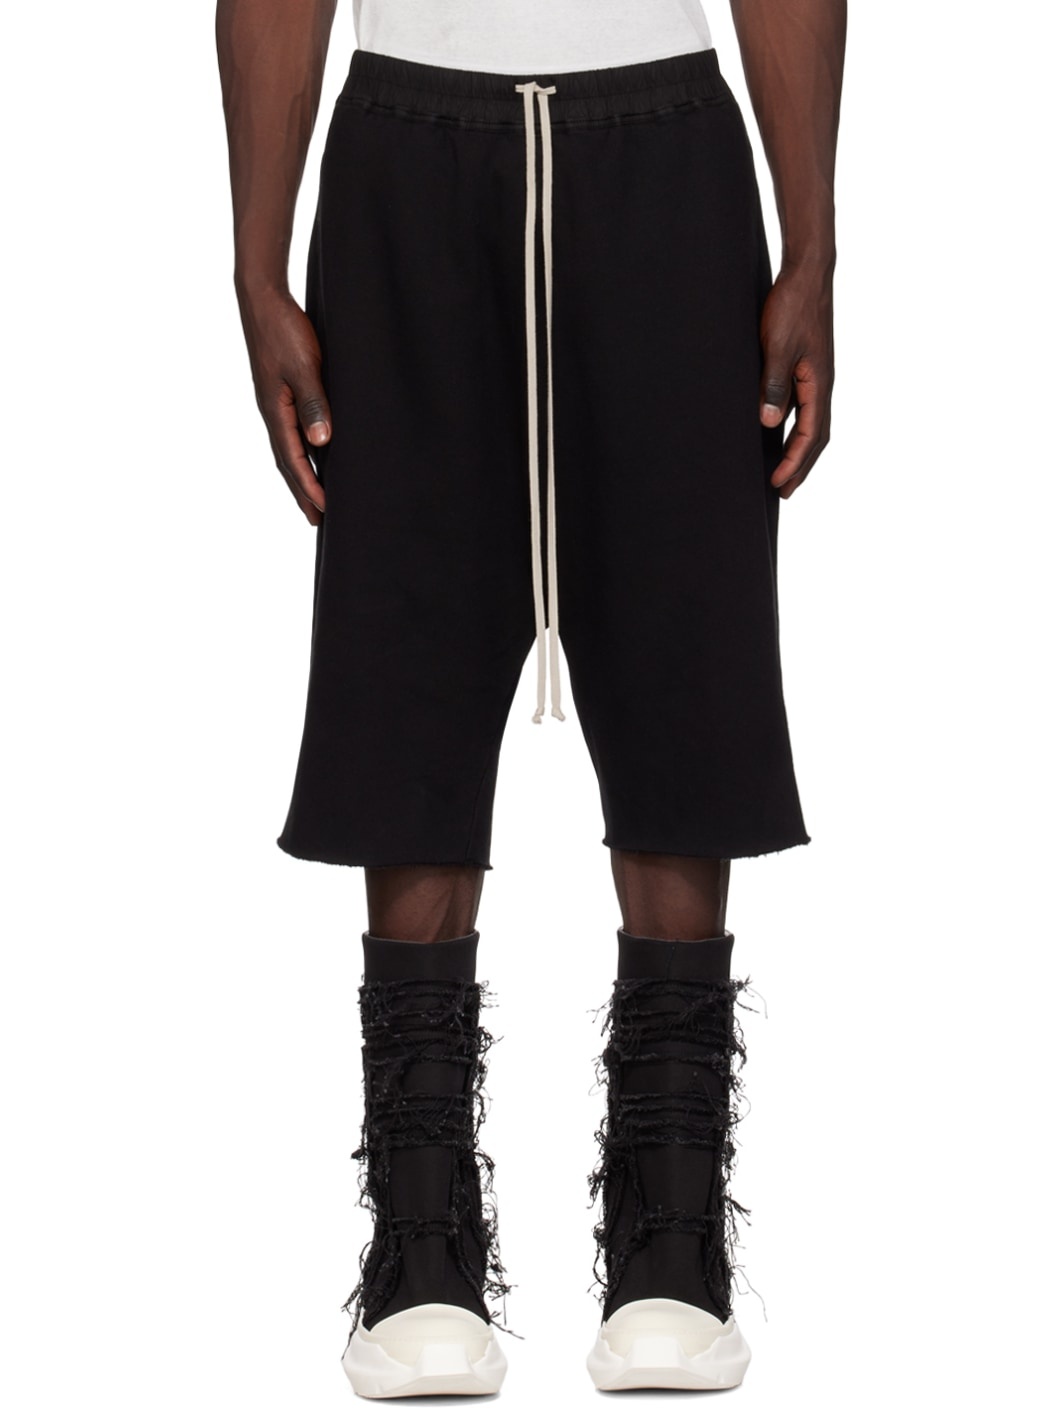 Black Drawstring Shorts - 1